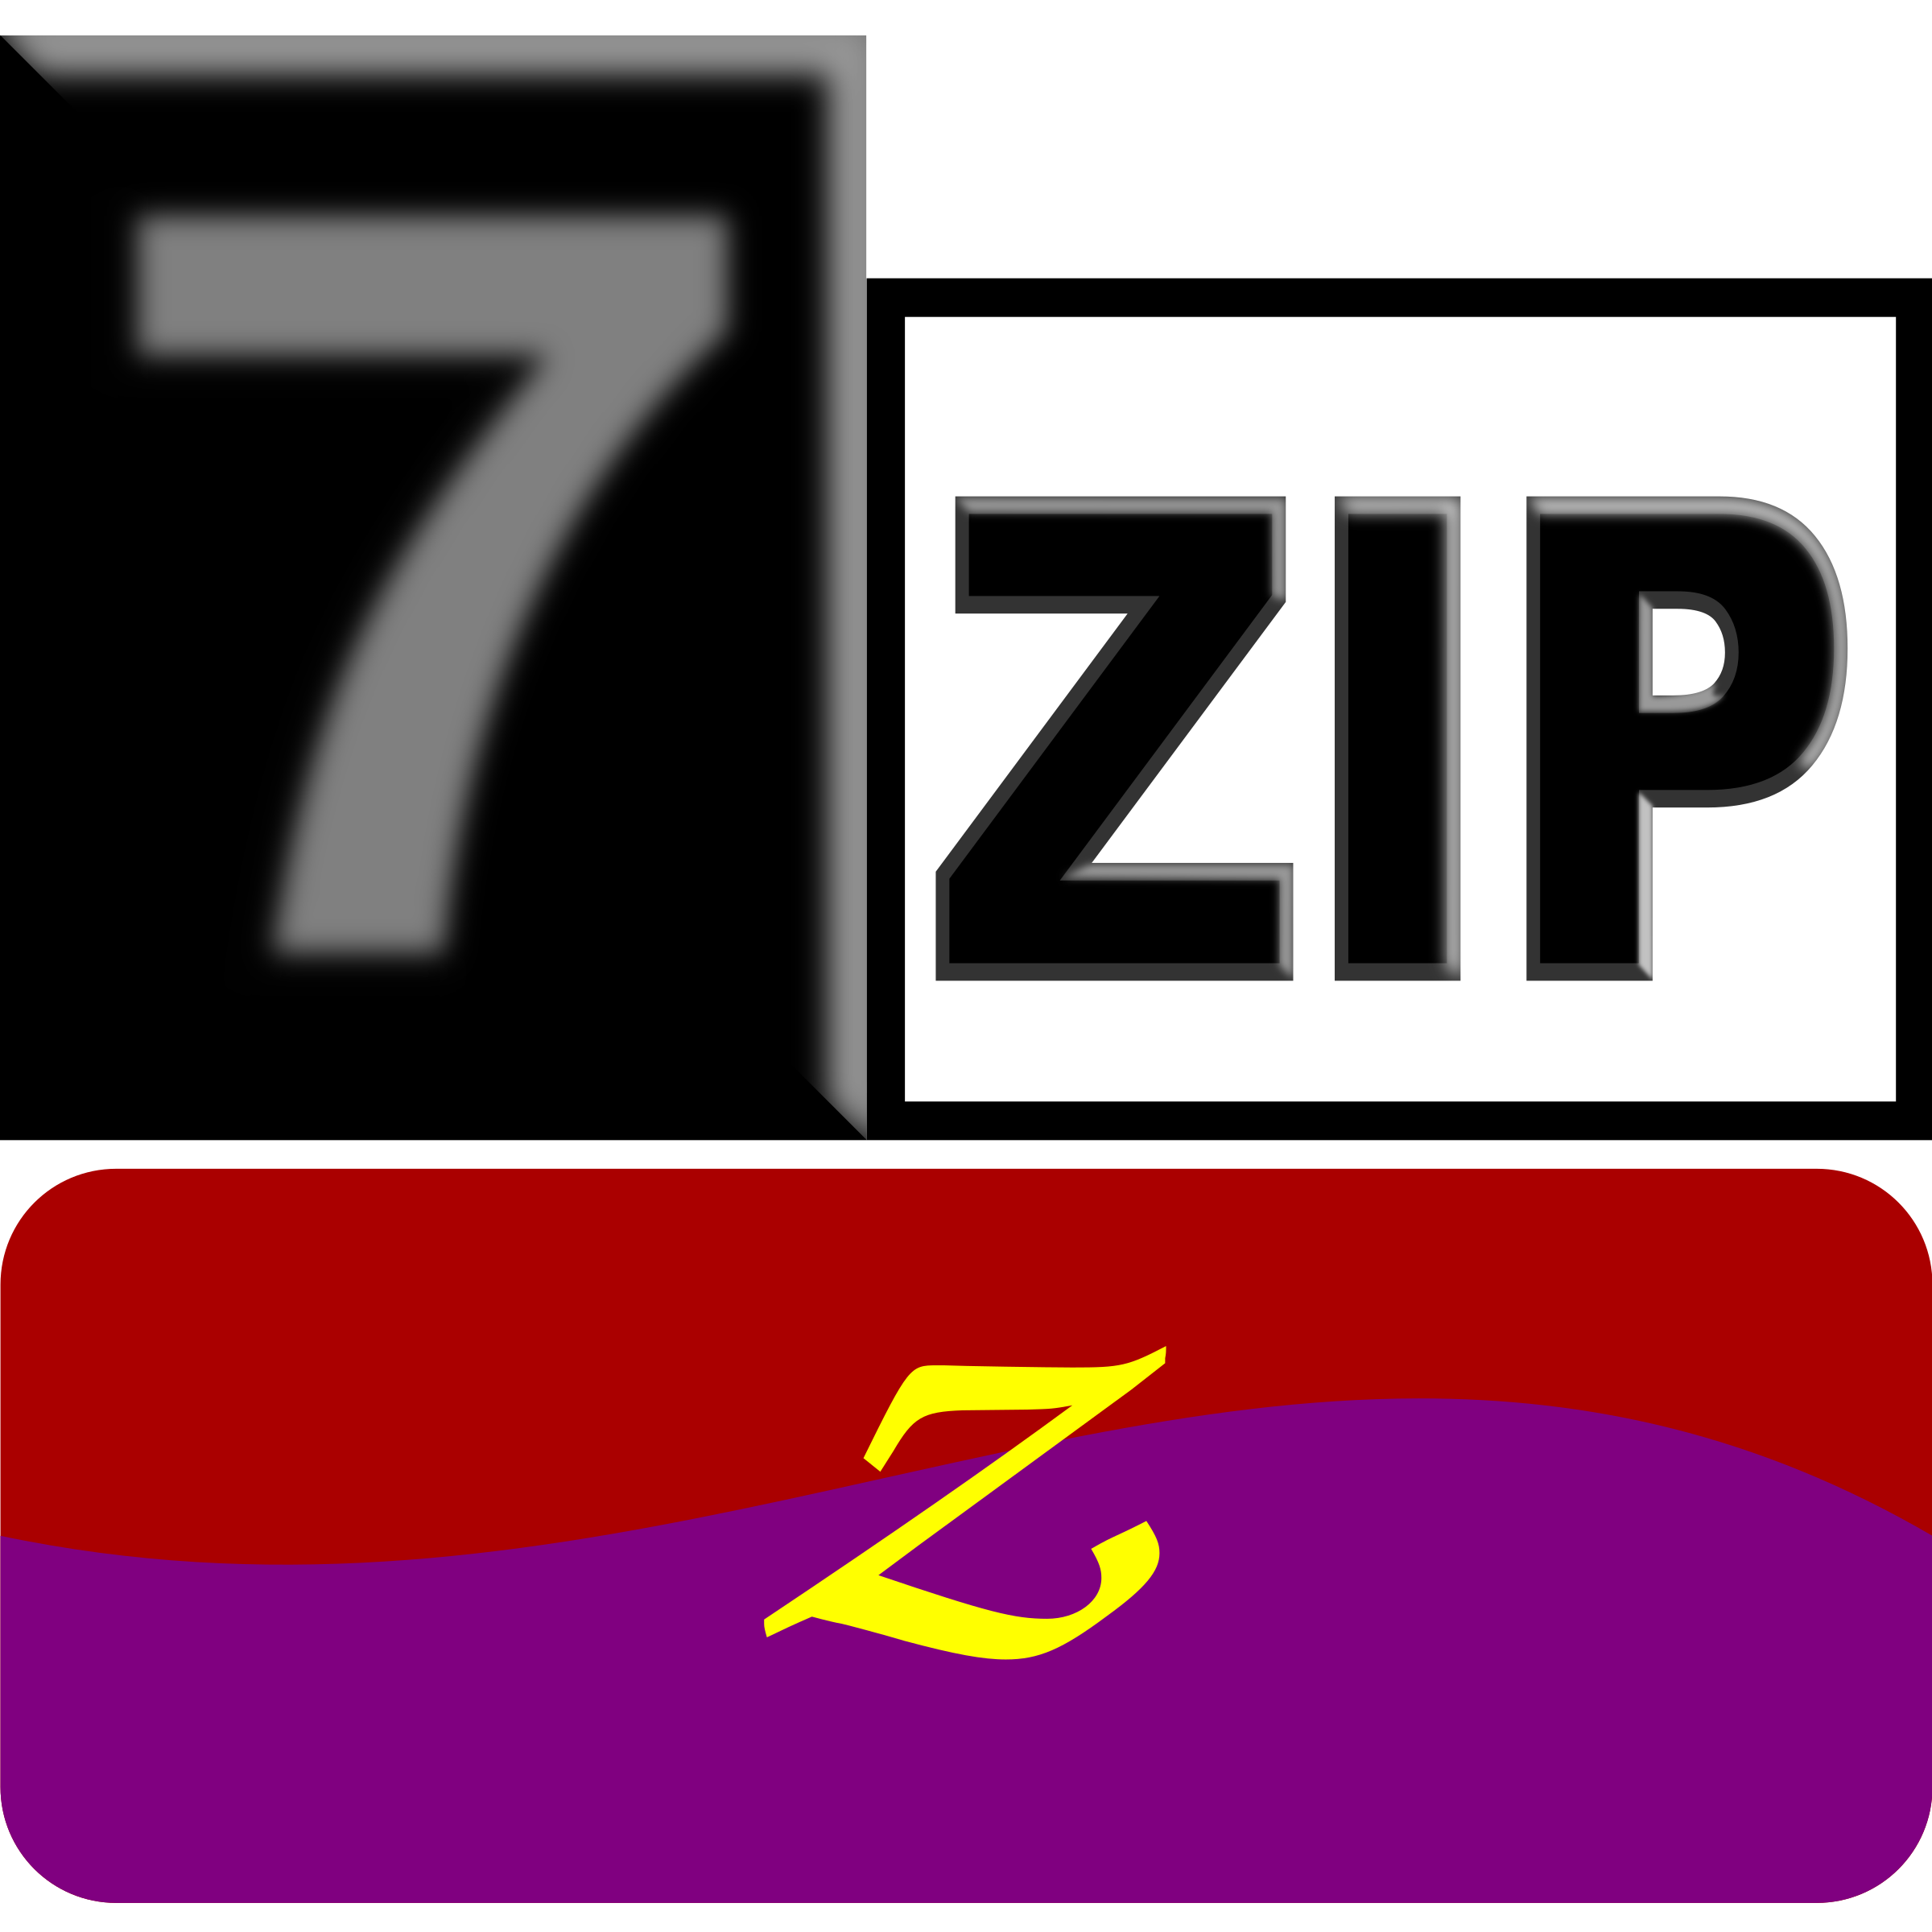 7zip Classic z SVG Clip arts